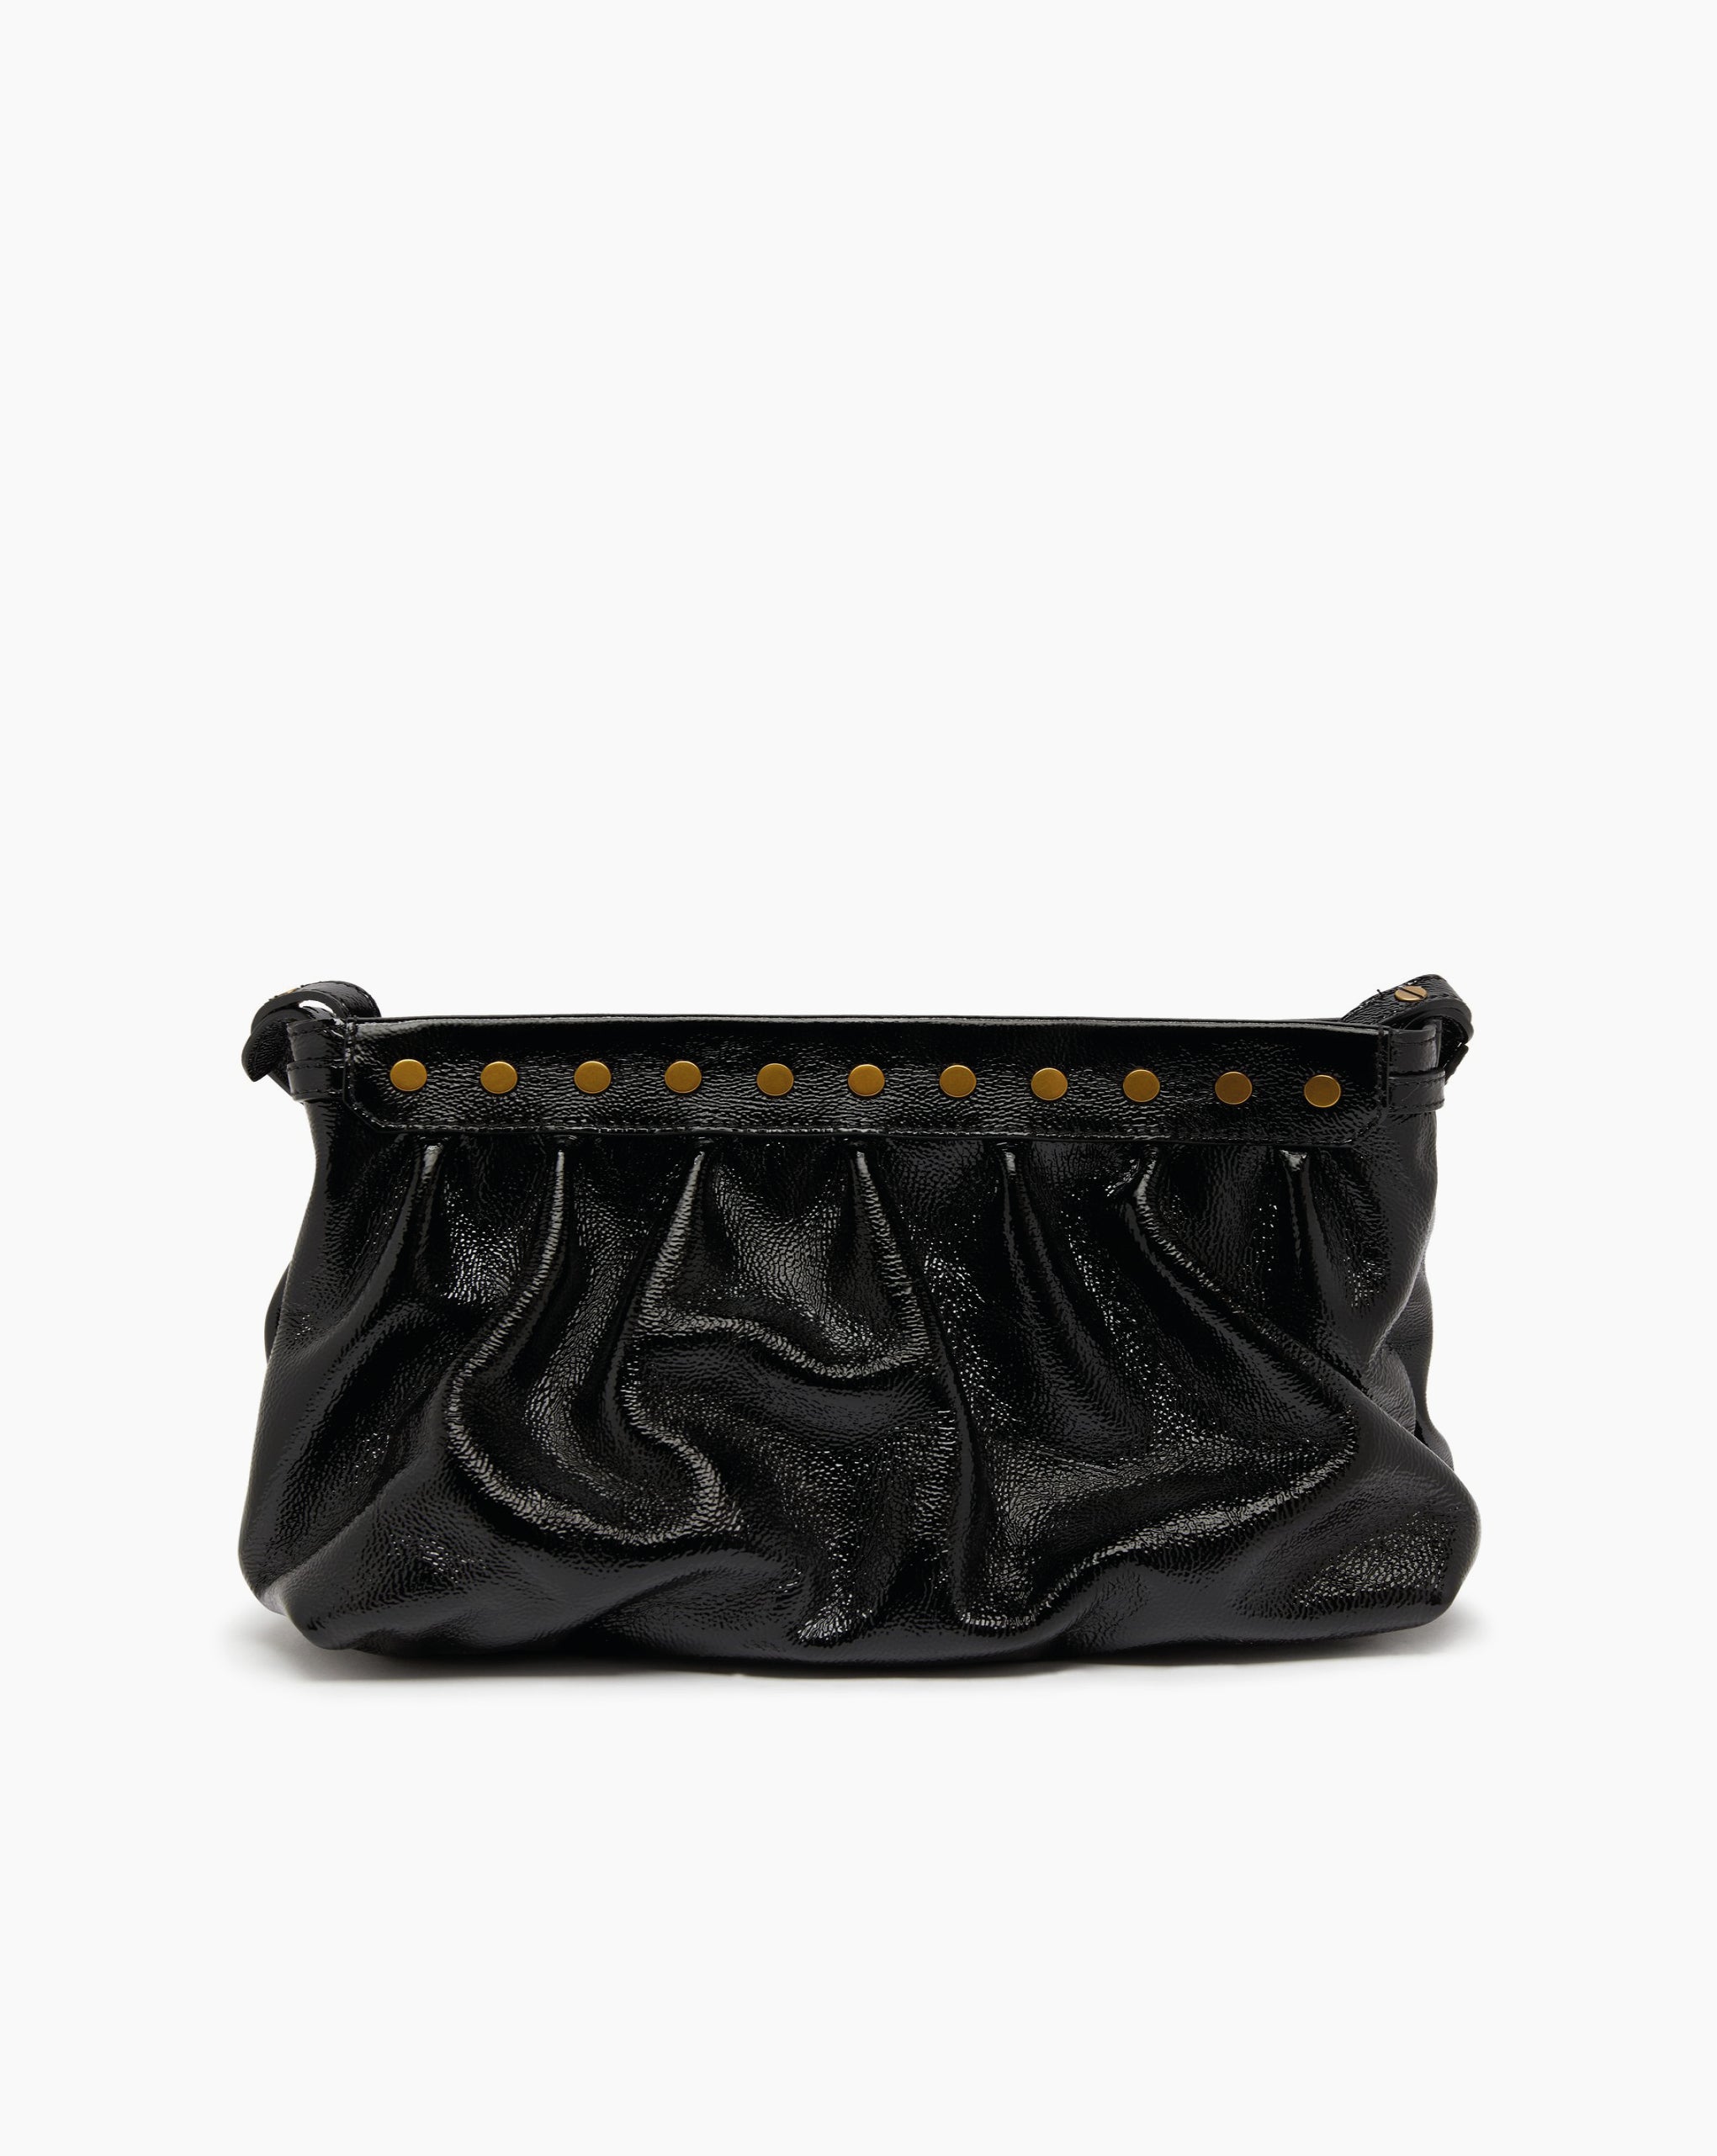 Luz Medium Bag Patent Black